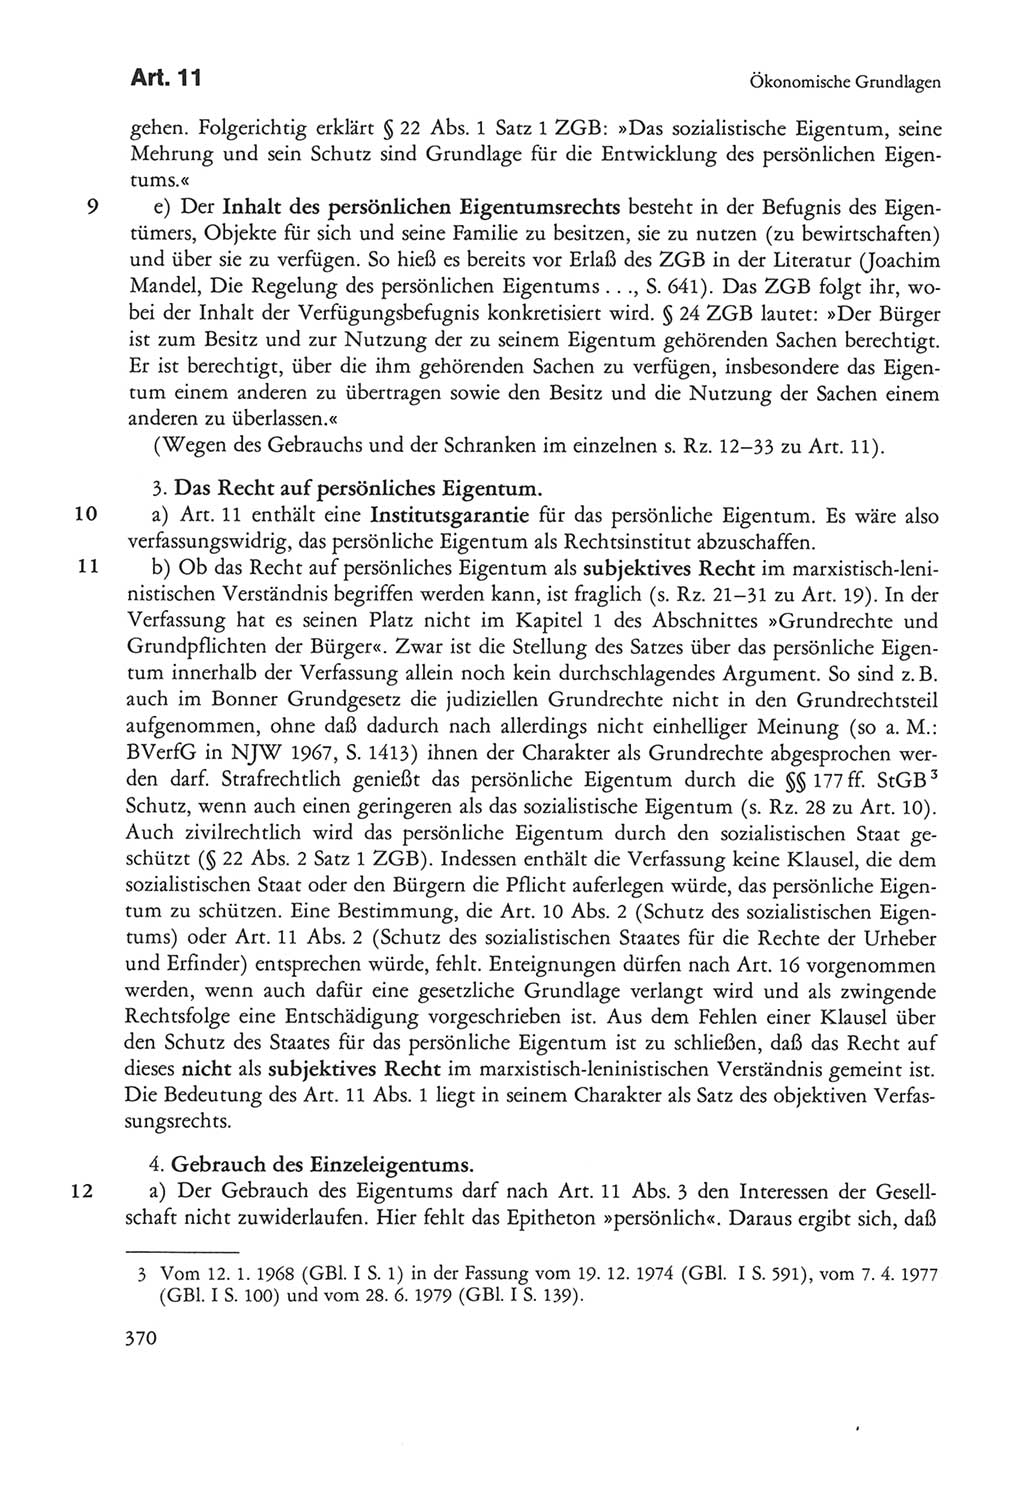 Die sozialistische Verfassung der Deutschen Demokratischen Republik (DDR), Kommentar 1982, Seite 370 (Soz. Verf. DDR Komm. 1982, S. 370)